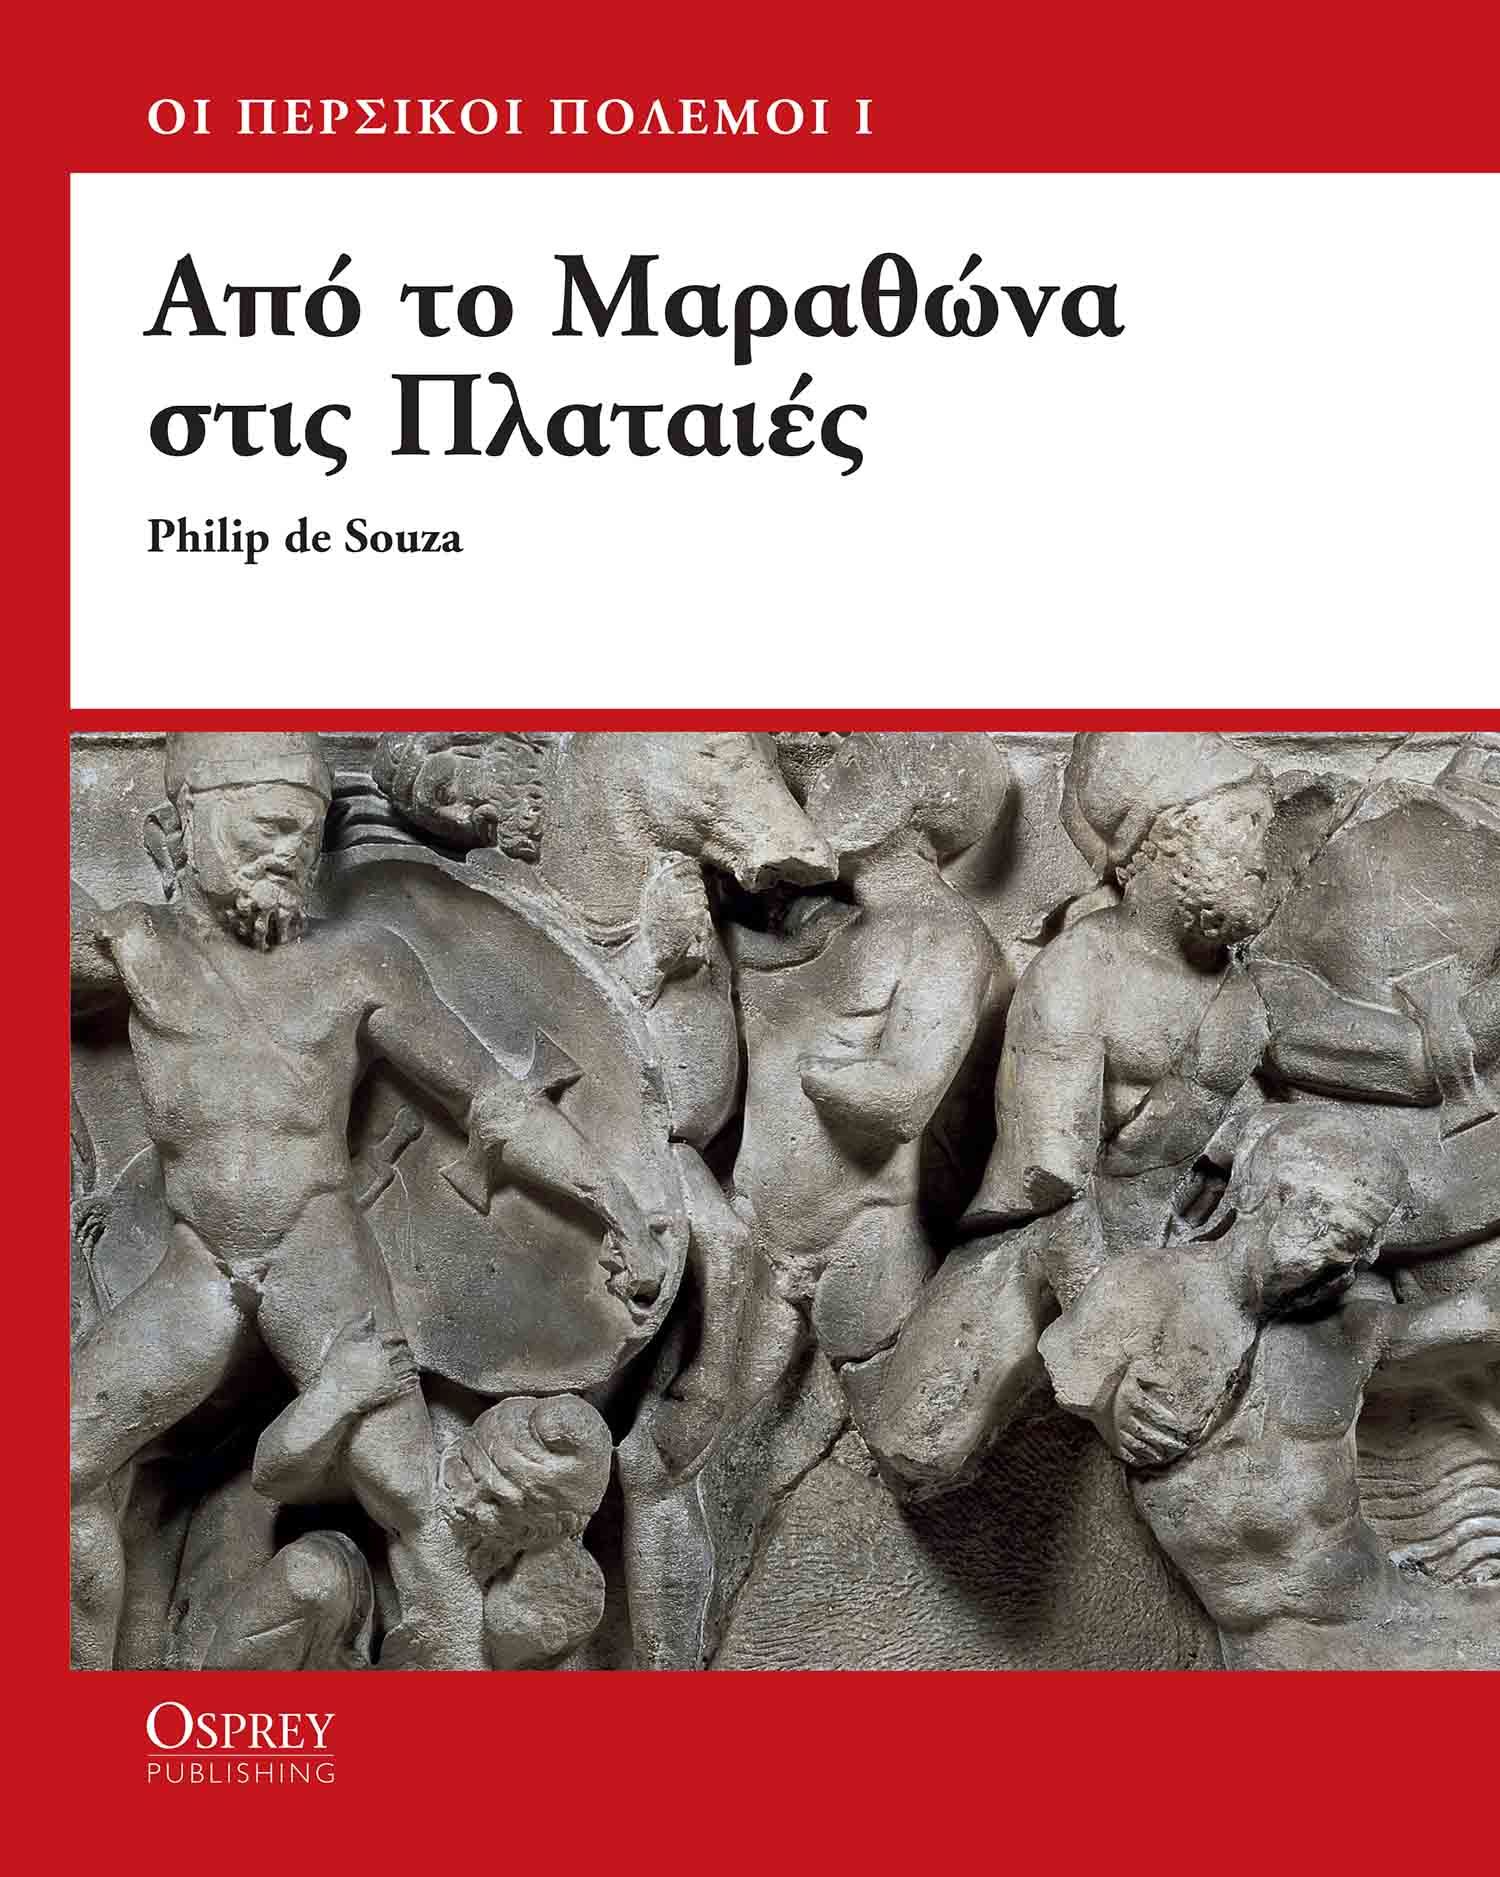 Πολεμική Βιβλιοθήκη της Αρχαίας Ελλάδας